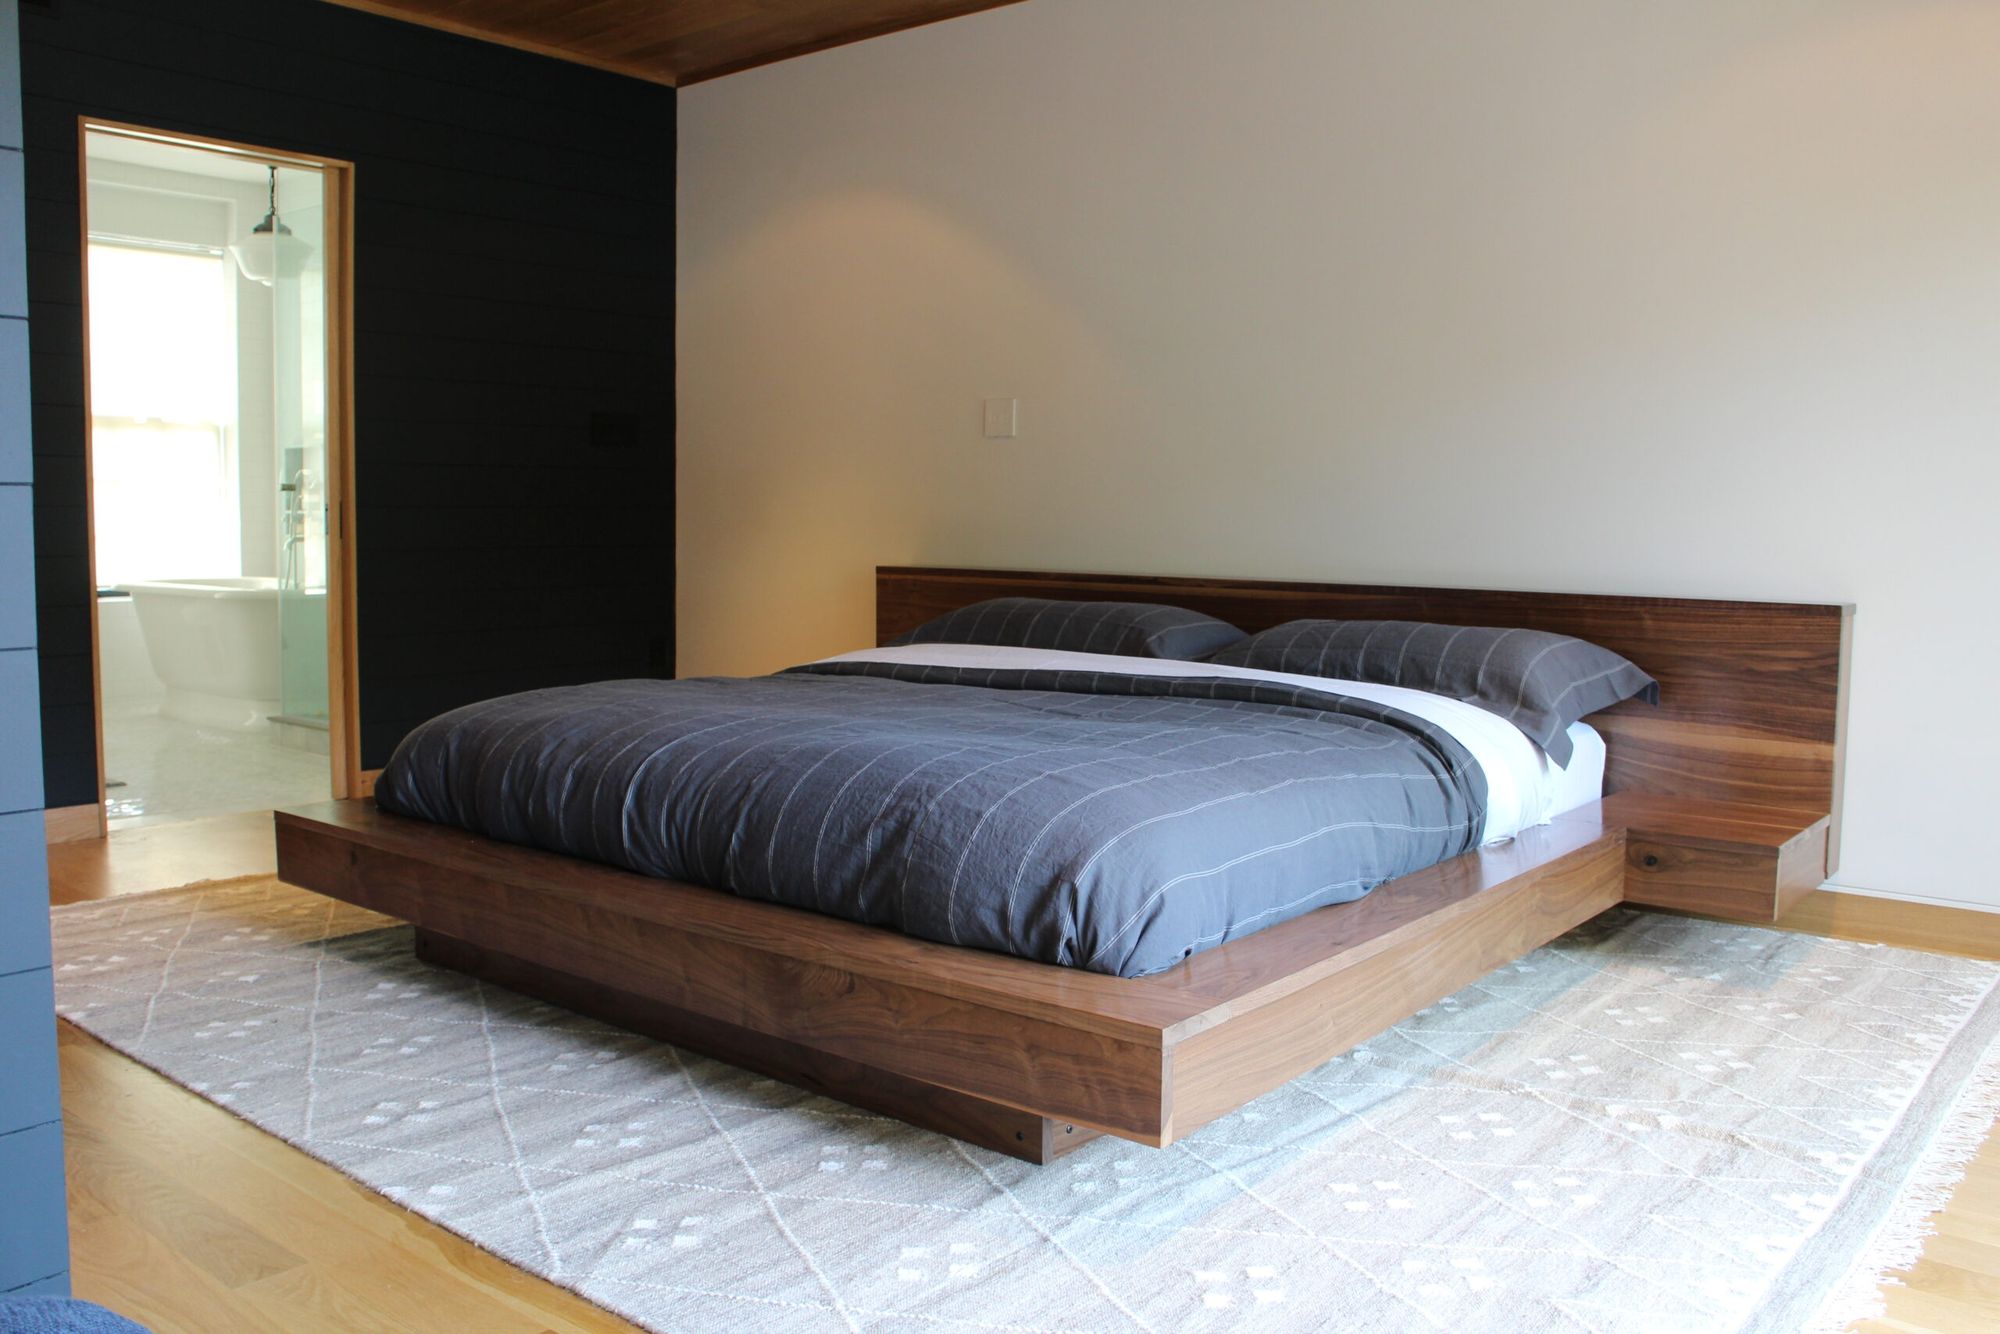 Giường ngủ gỗ óc chó kiểu truyền thống